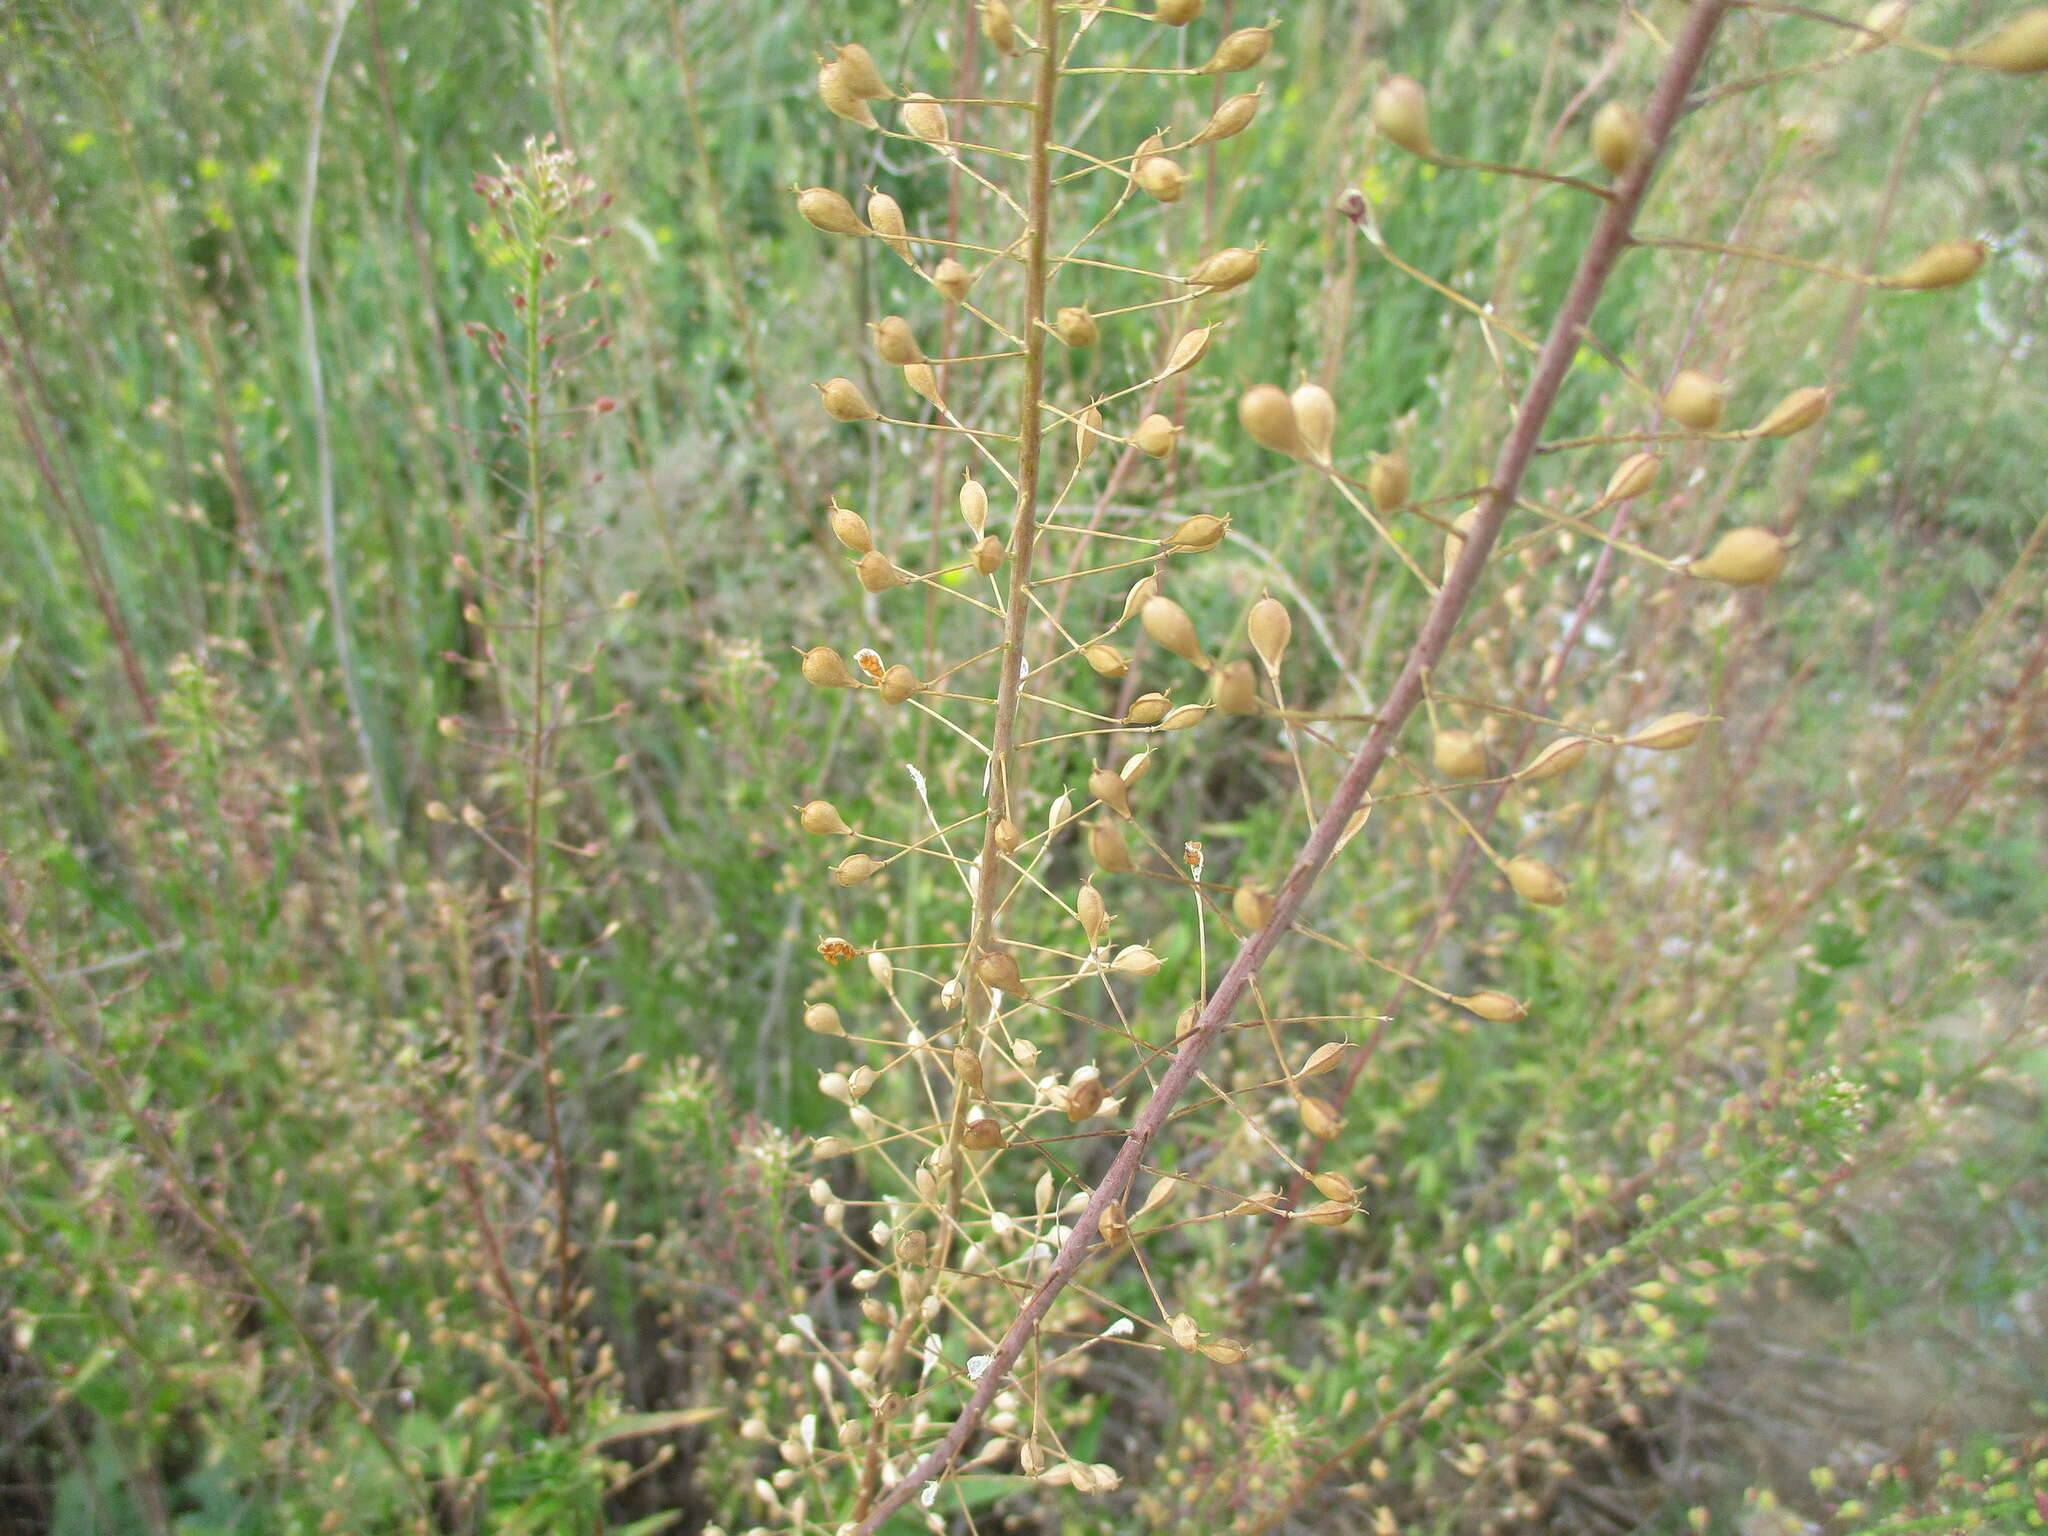 Image of false flax